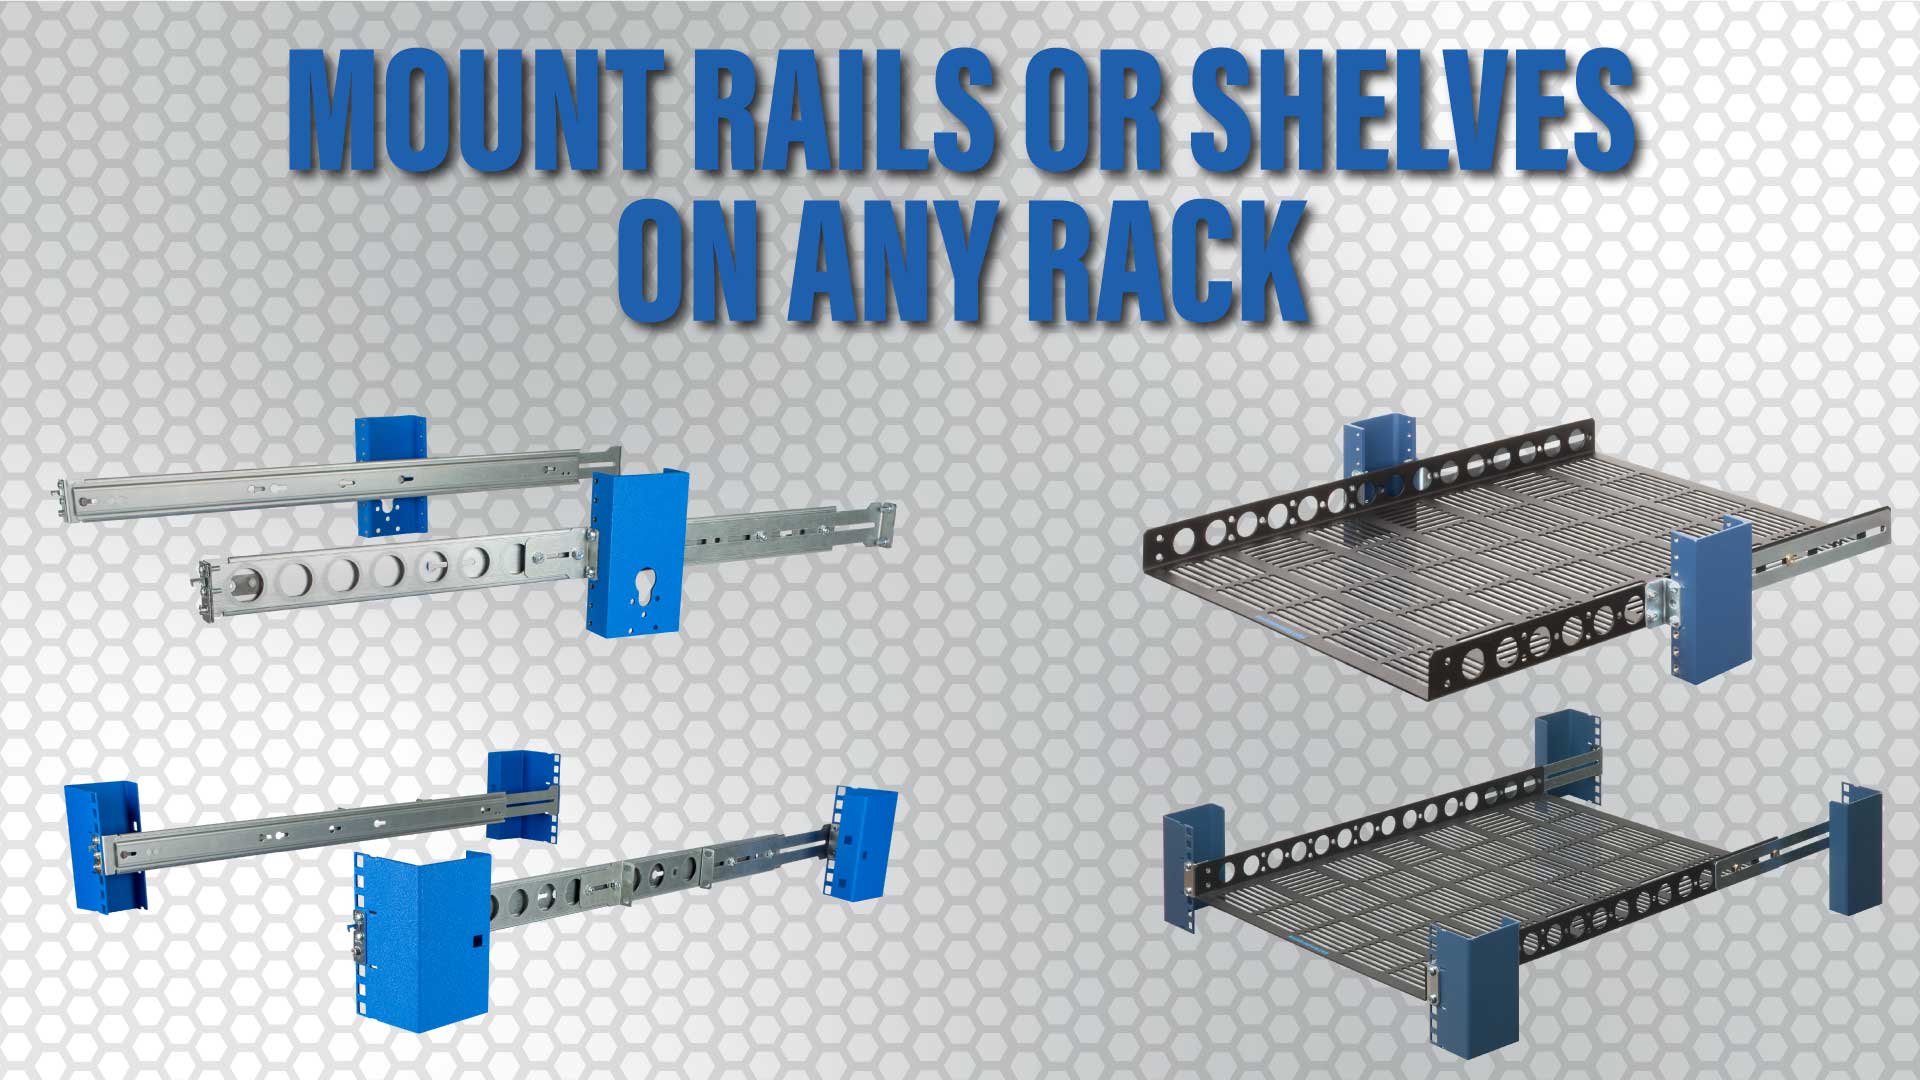 Mount rails or shelves on any rack